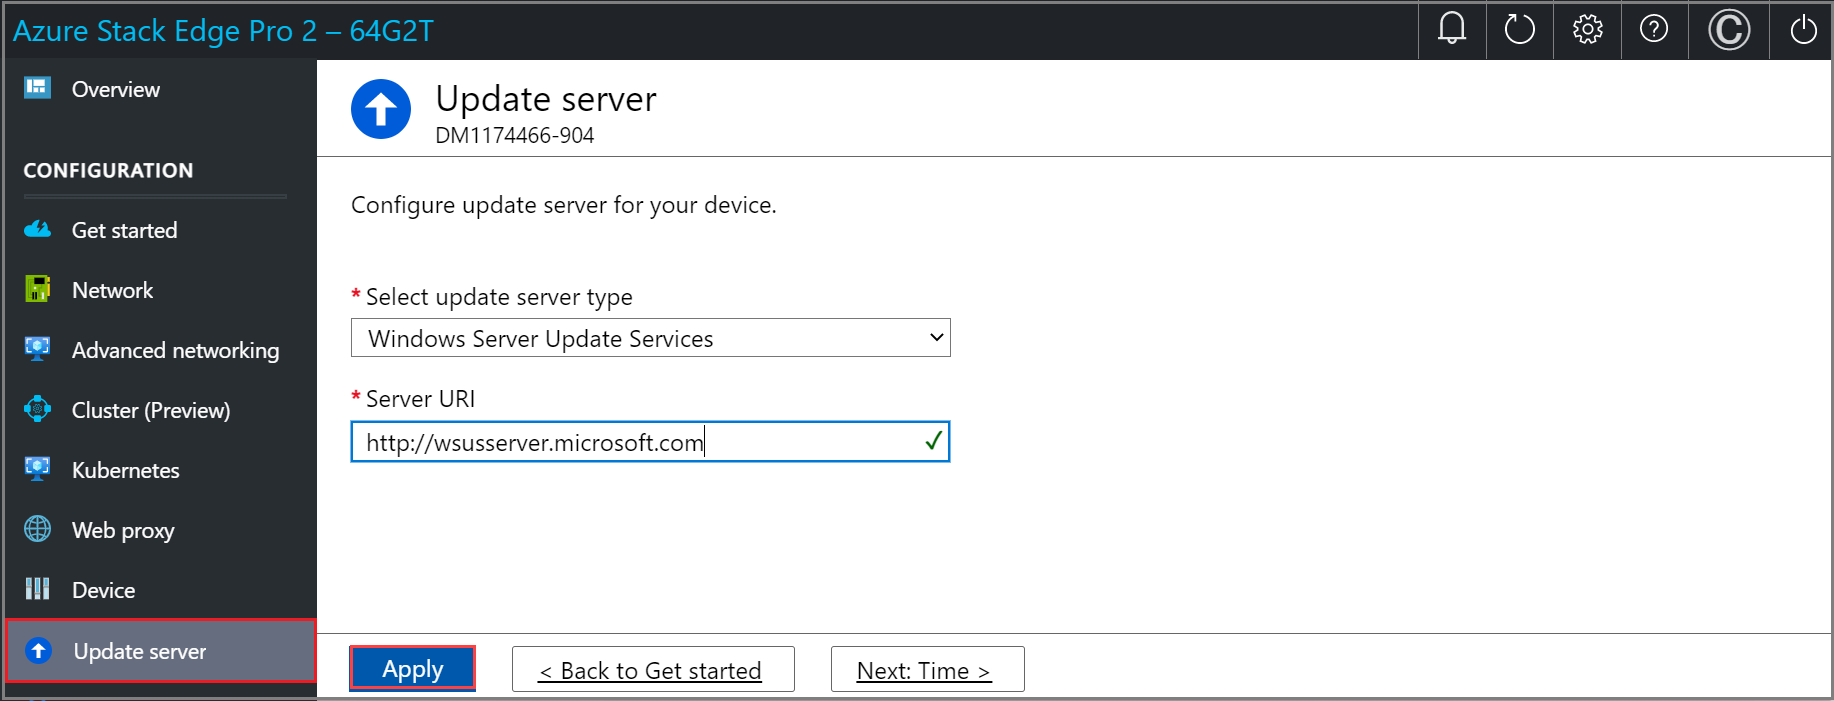 Captura de pantalla de la página Actualizar servidor con Windows Server Update Services configurado en la interfaz de usuario web local de un dispositivo Azure Stack Edge. El botón Aplicar está resaltado.